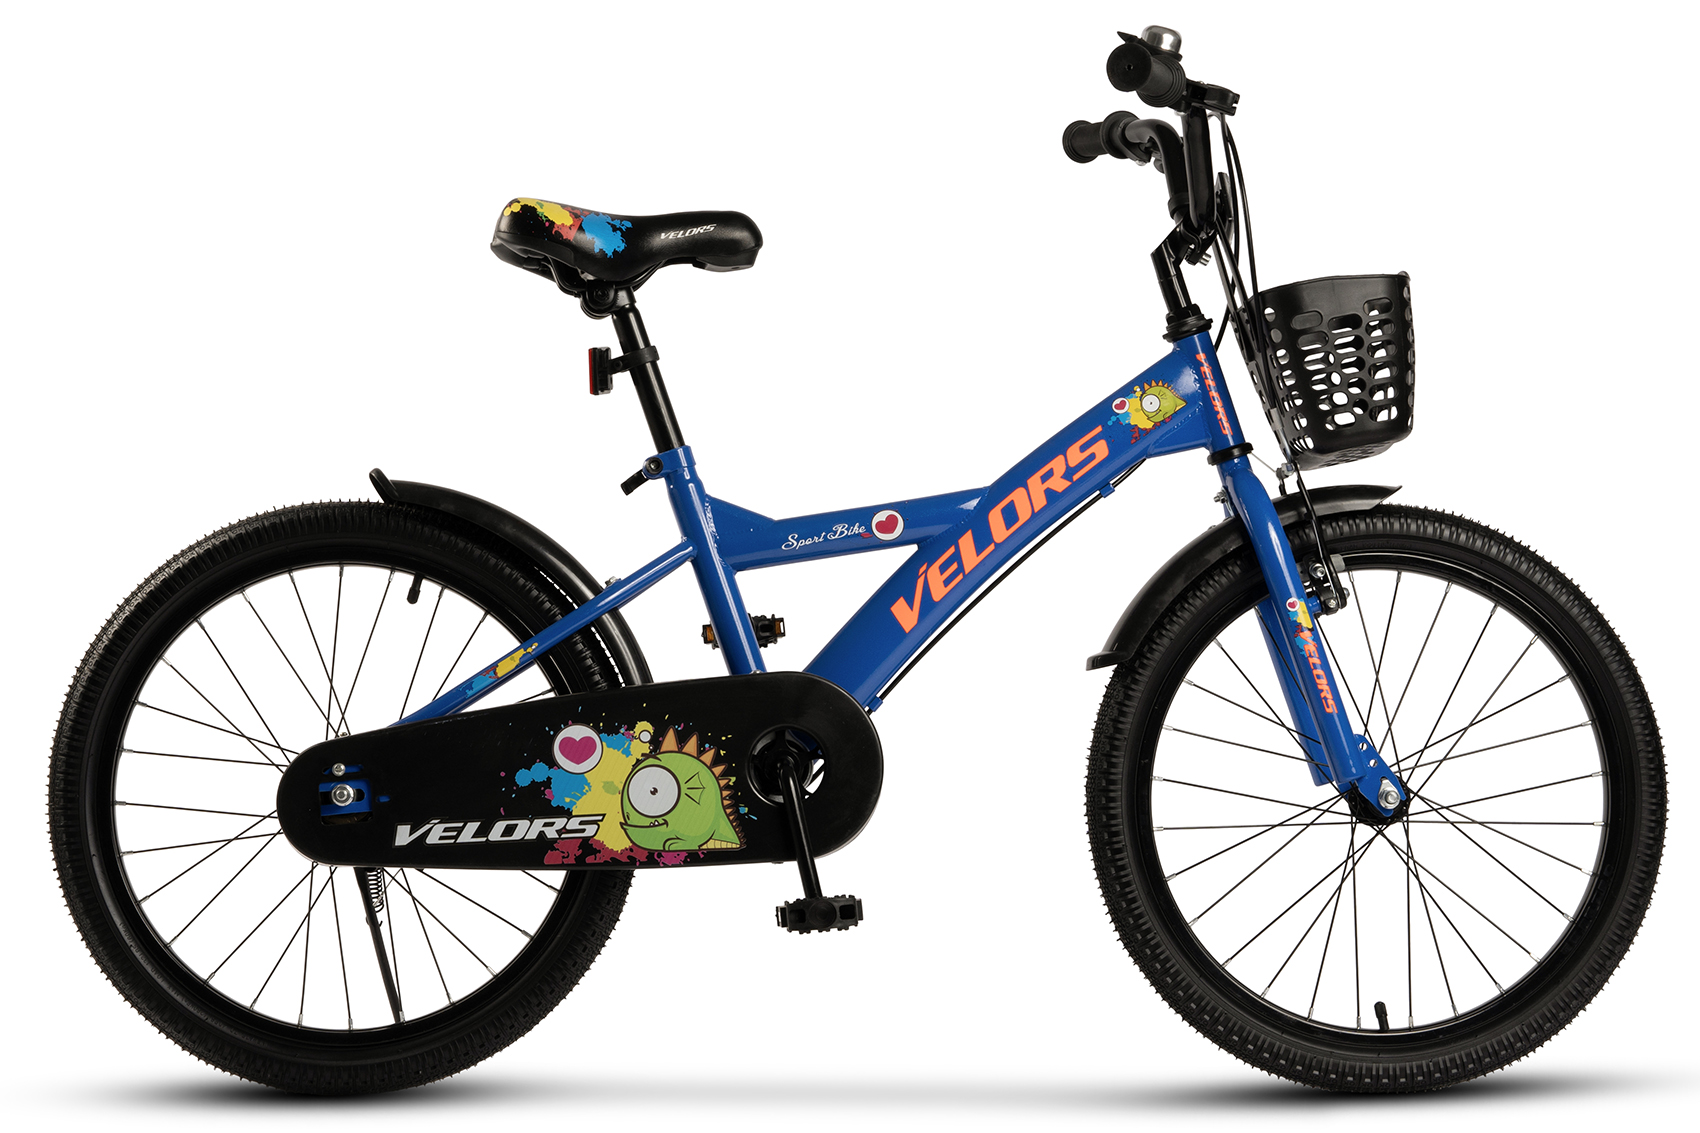 BICICLETE PENTRU COPII - Bicicleta Copii 7-10 ani Velors V2001B 20", Albastru/Portocaliu, https:carpatsport.ro